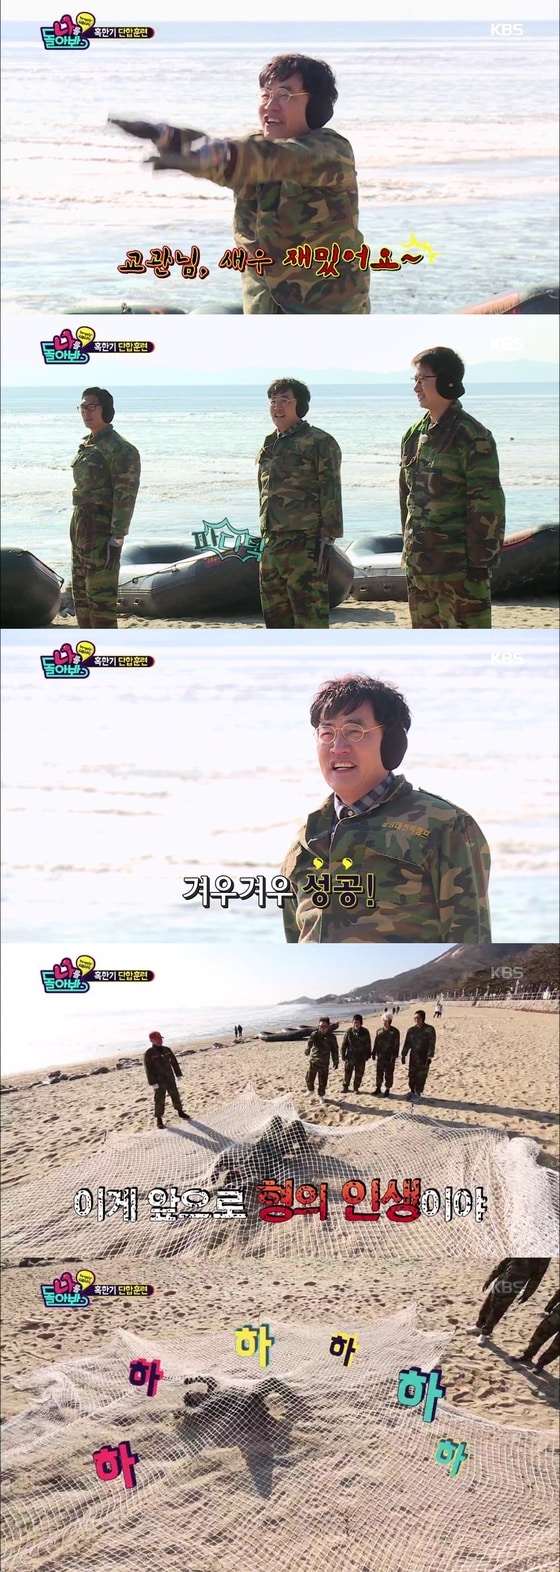 방송인 이경규가 물오른 예능감을 드러냈다.© News1star/KBS2 '나를 돌아봐' 캡처